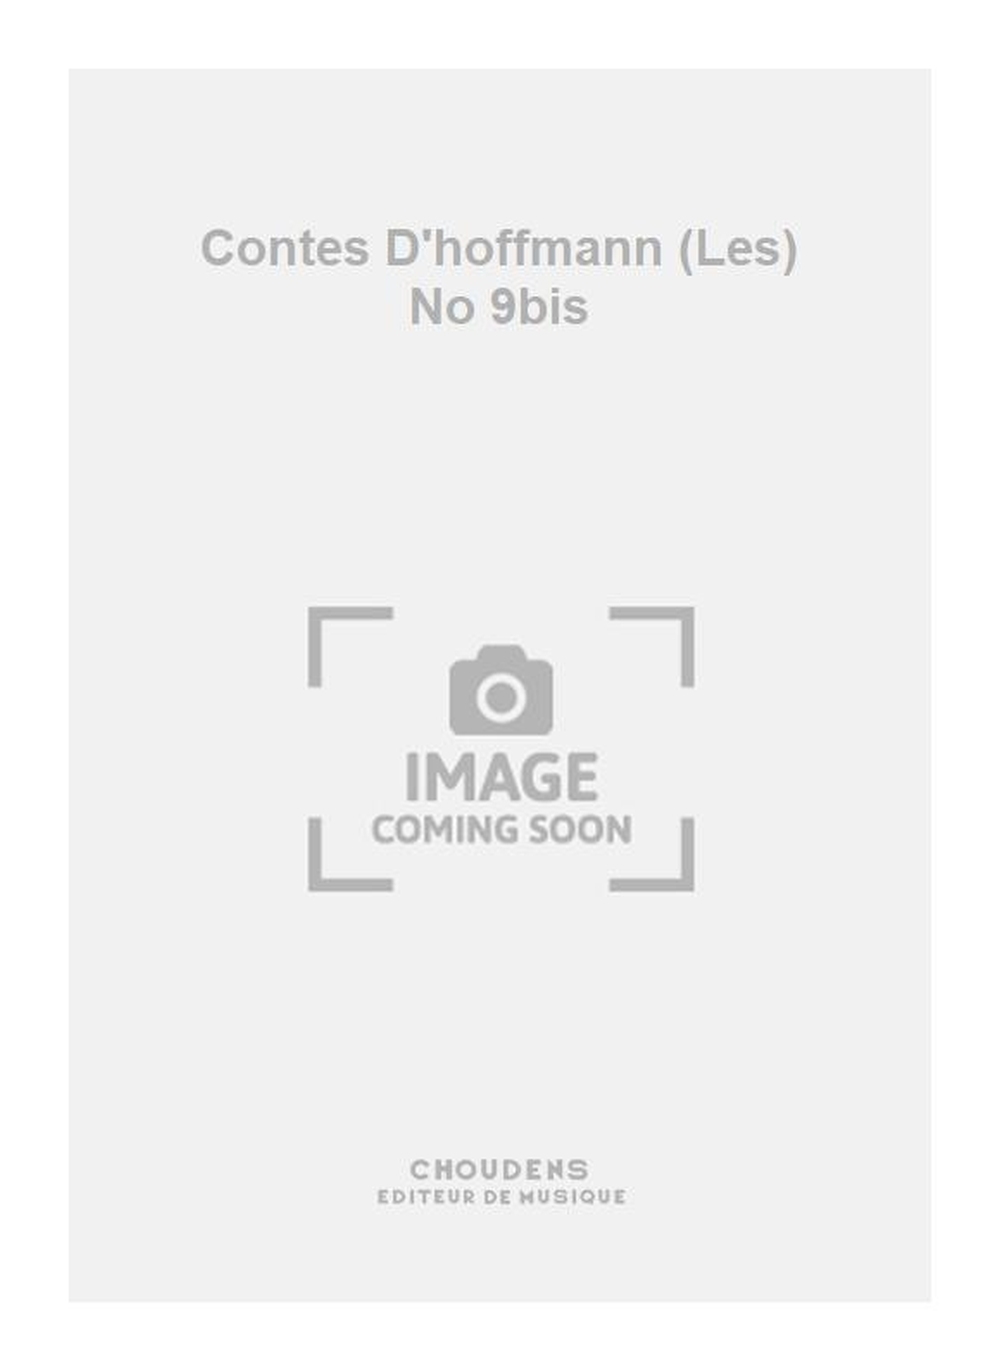 Jacques Offenbach: Contes D'hoffmann (Les) No 9bis